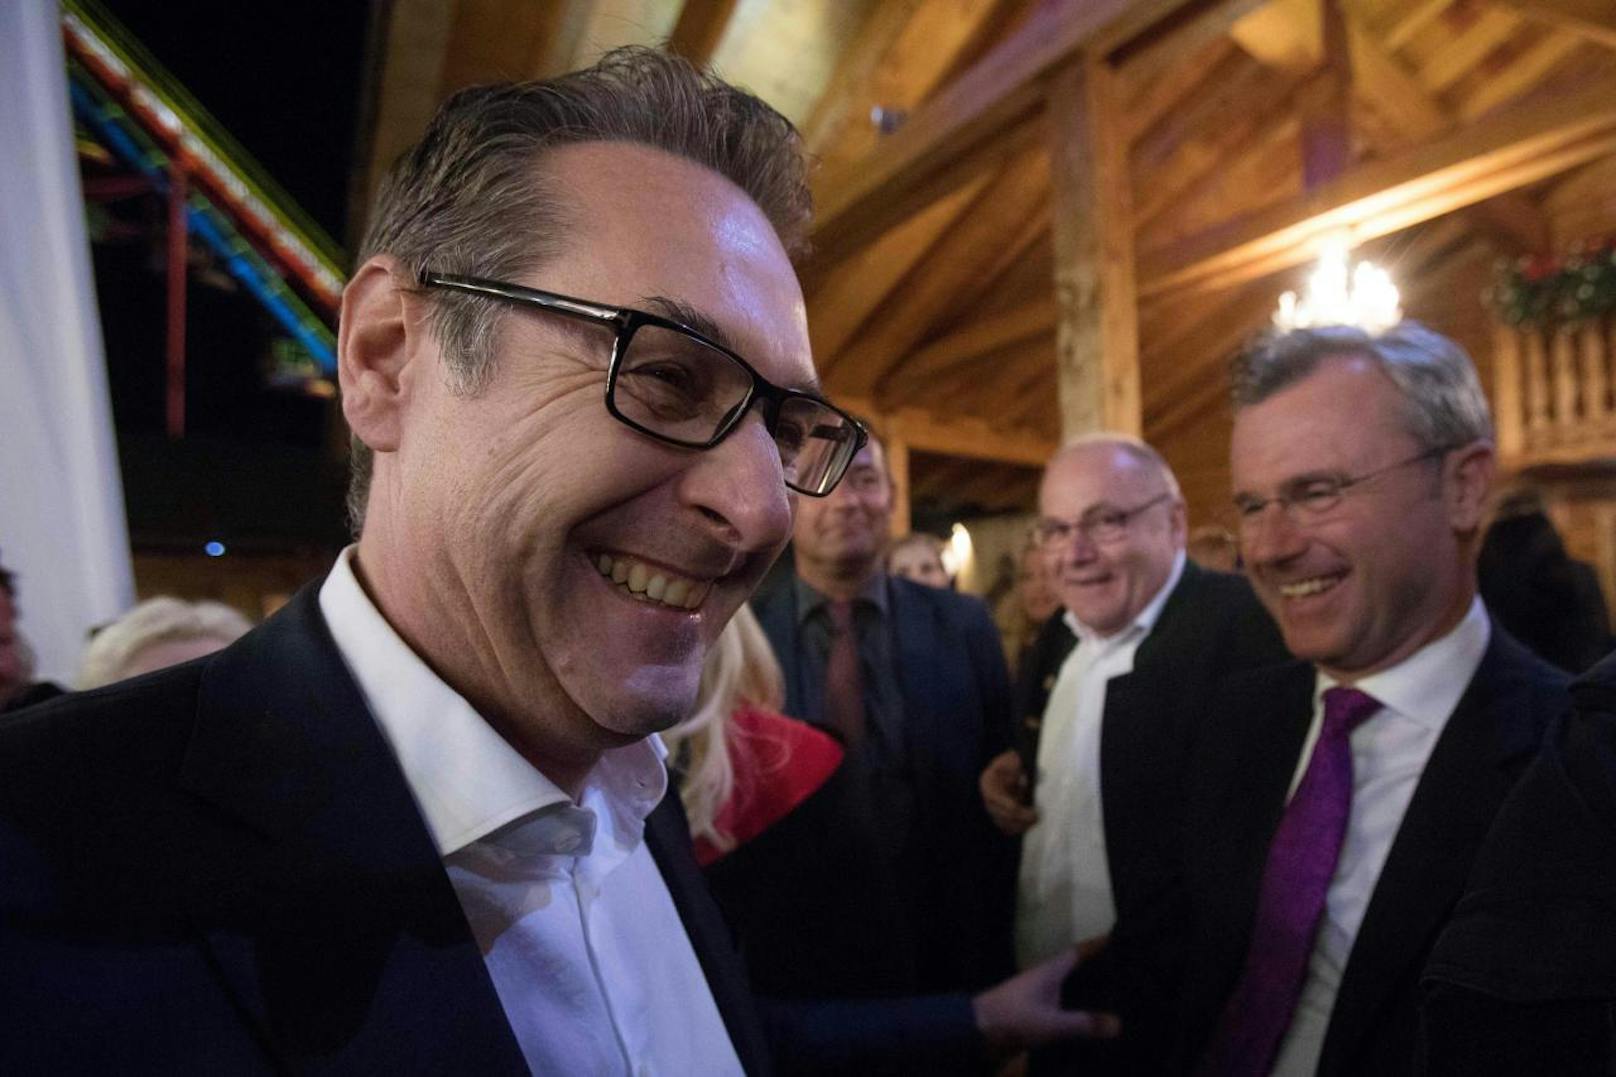 Beim "FPÖ-Oktoberfest" im September diesen Jahres trafen Ex-FPÖ-Chef Heinz-Christian Strache (l.) und der jetzige FPÖ-Obmann Norbert Hofer zuletzt öffentlich aufeinander.